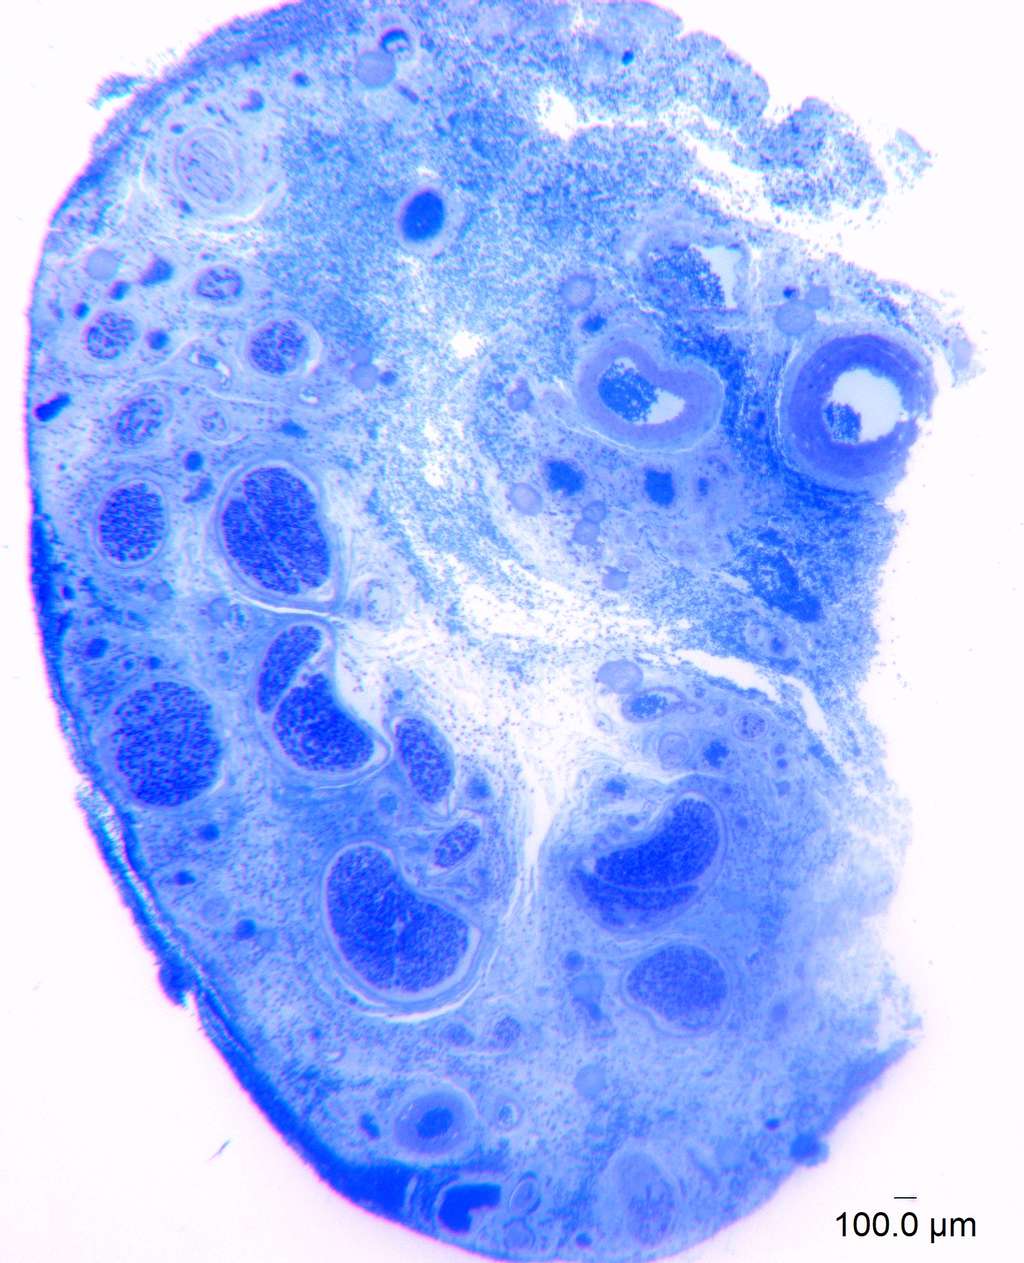 Coupe transversale agrandie du nerf dorsal du clitoris humain, principalement responsable de la sensation clitoridienne. Chaque point minuscule, bleu foncé, placé à l'intérieur des grands cercles bleus, représente une fibre nerveuse individuelle du nerf dorsal. Les chercheurs ont agrandi les échantillons au microscope 1 000 fois et utilisé un logiciel d'analyse d'images pour compter les fibres nerveuses. © <em>Oregon Health & Science University</em>